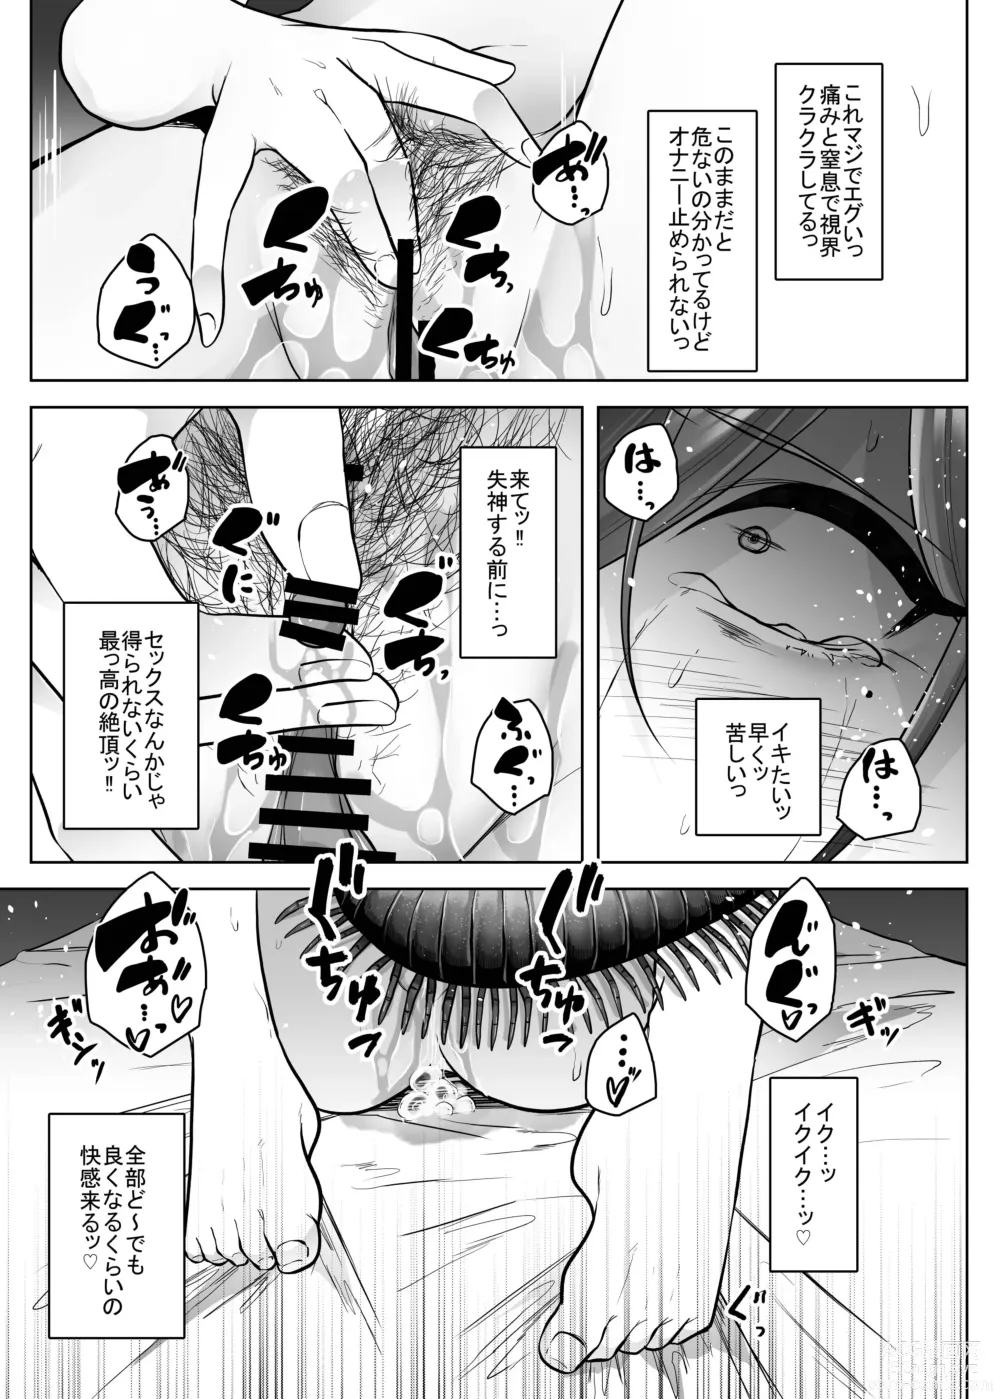 Page 32 of doujinshi Mushikan Fuuzokuten Bangaihen 3